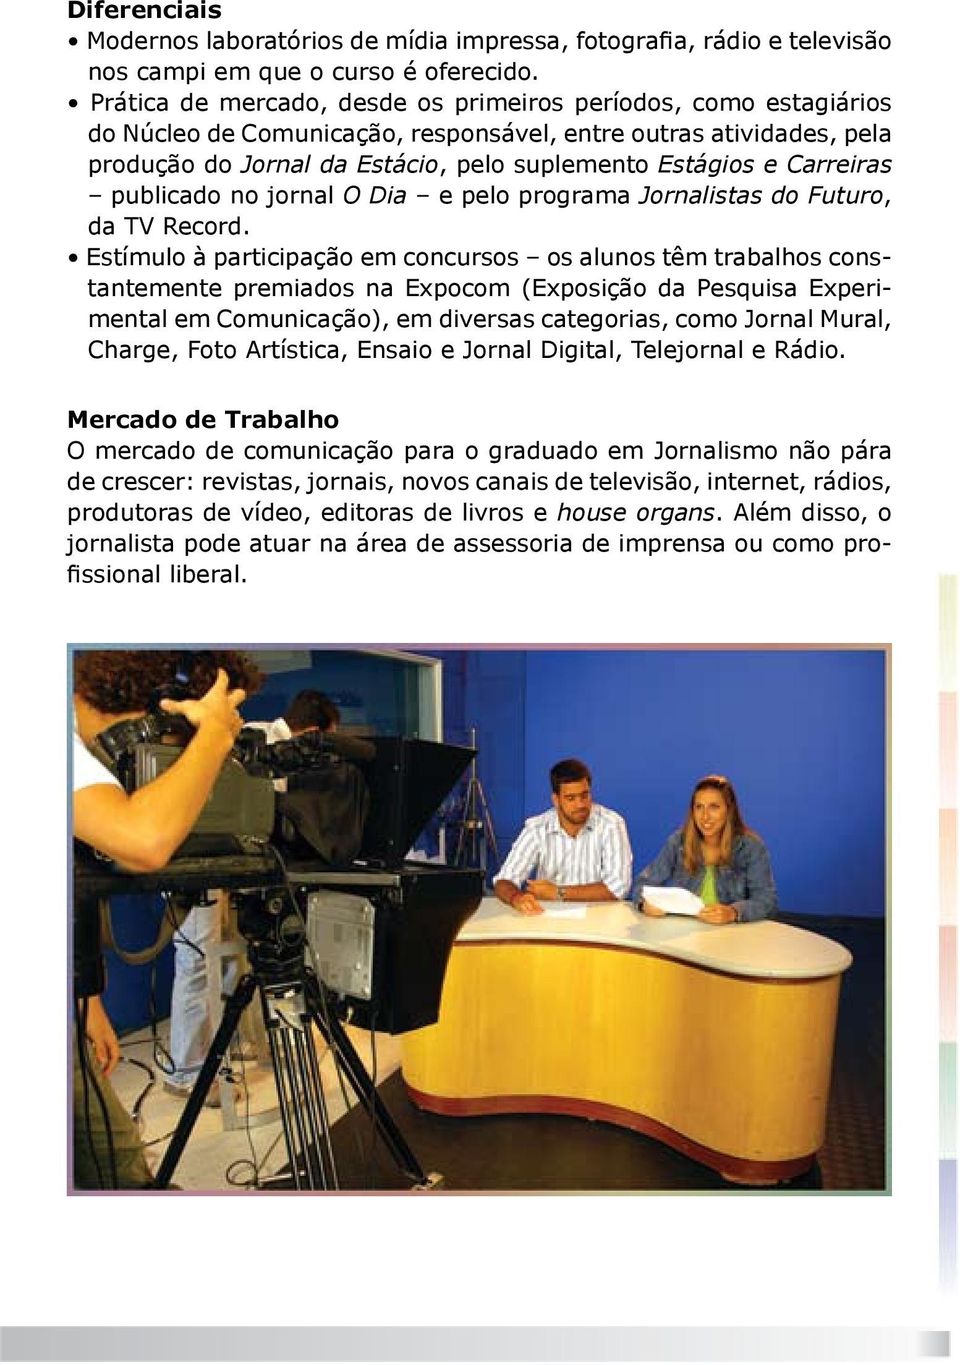 Carreiras publicado no jornal O Dia e pelo programa Jornalistas do Futuro, da TV Record.